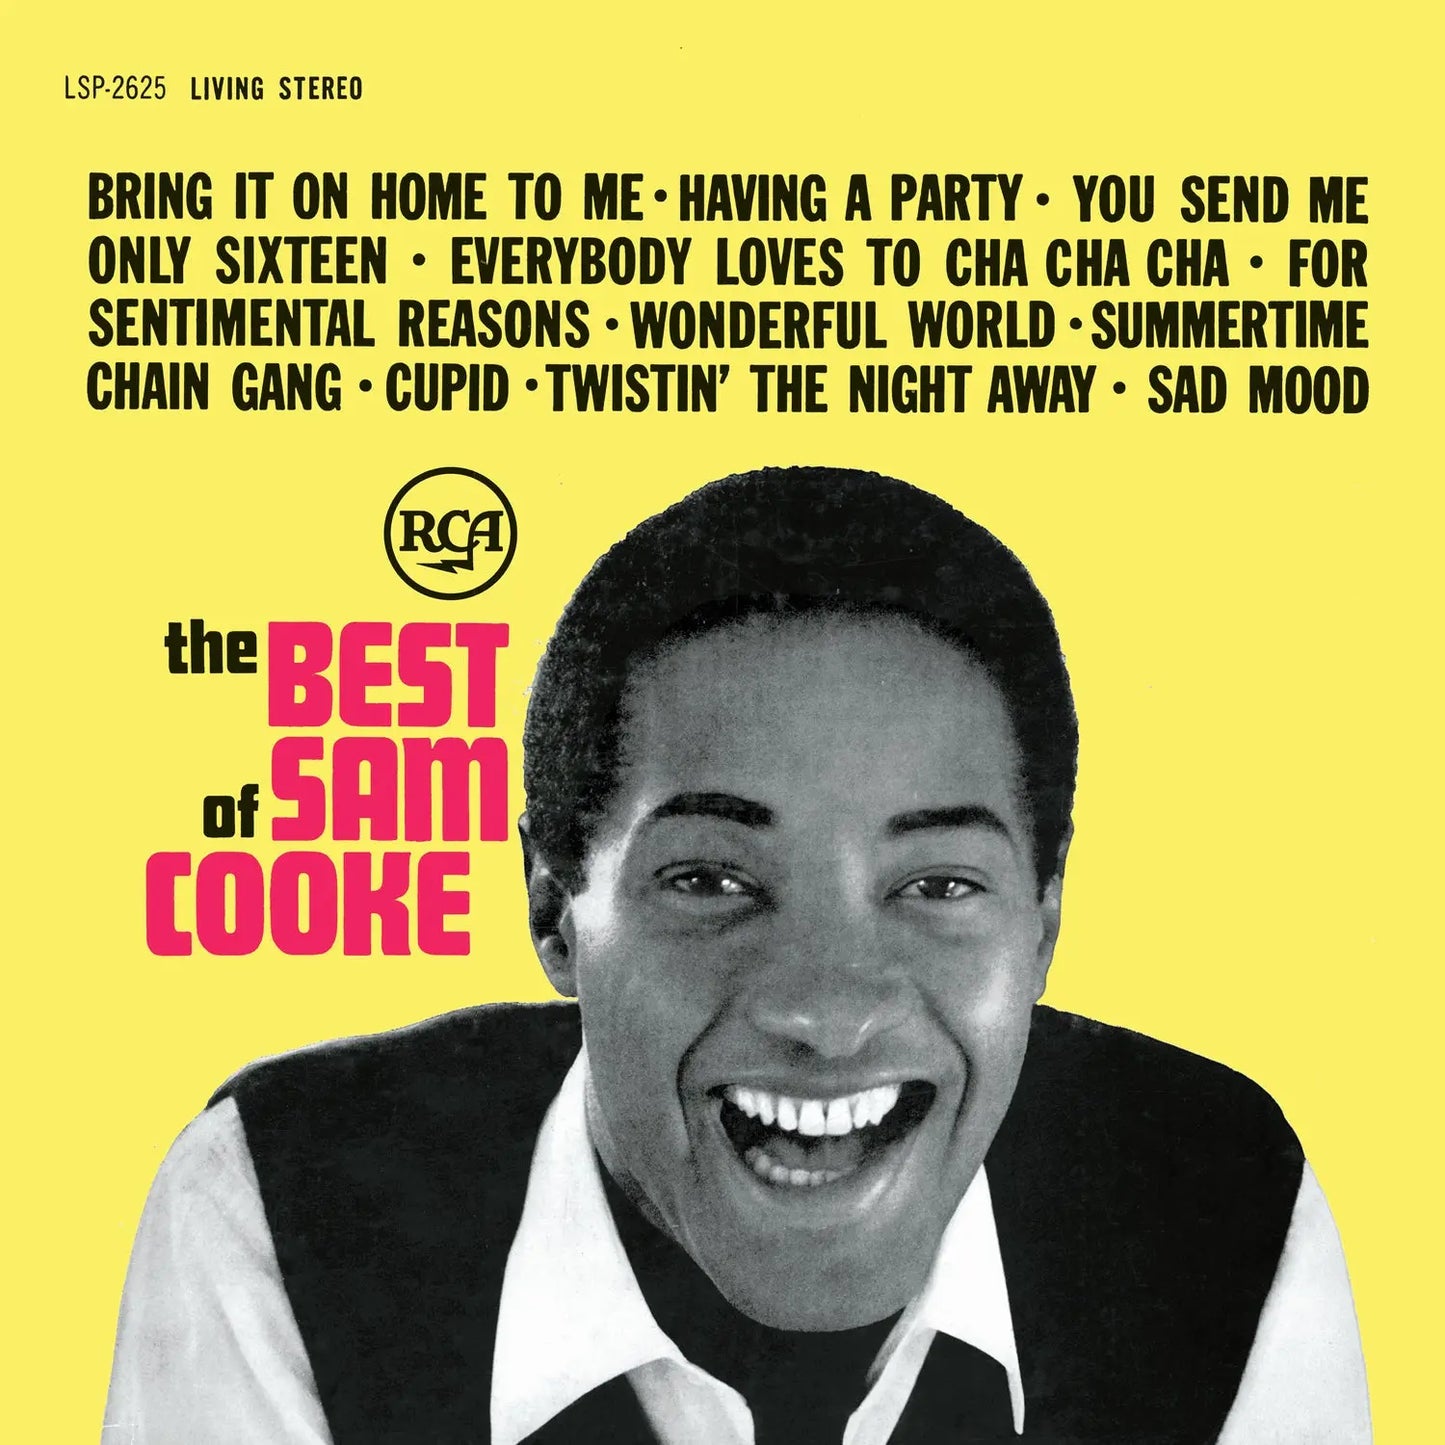 Sam Cooke - The Best Of (140 Gram Vinyl, Download Insert) [Vinyl]